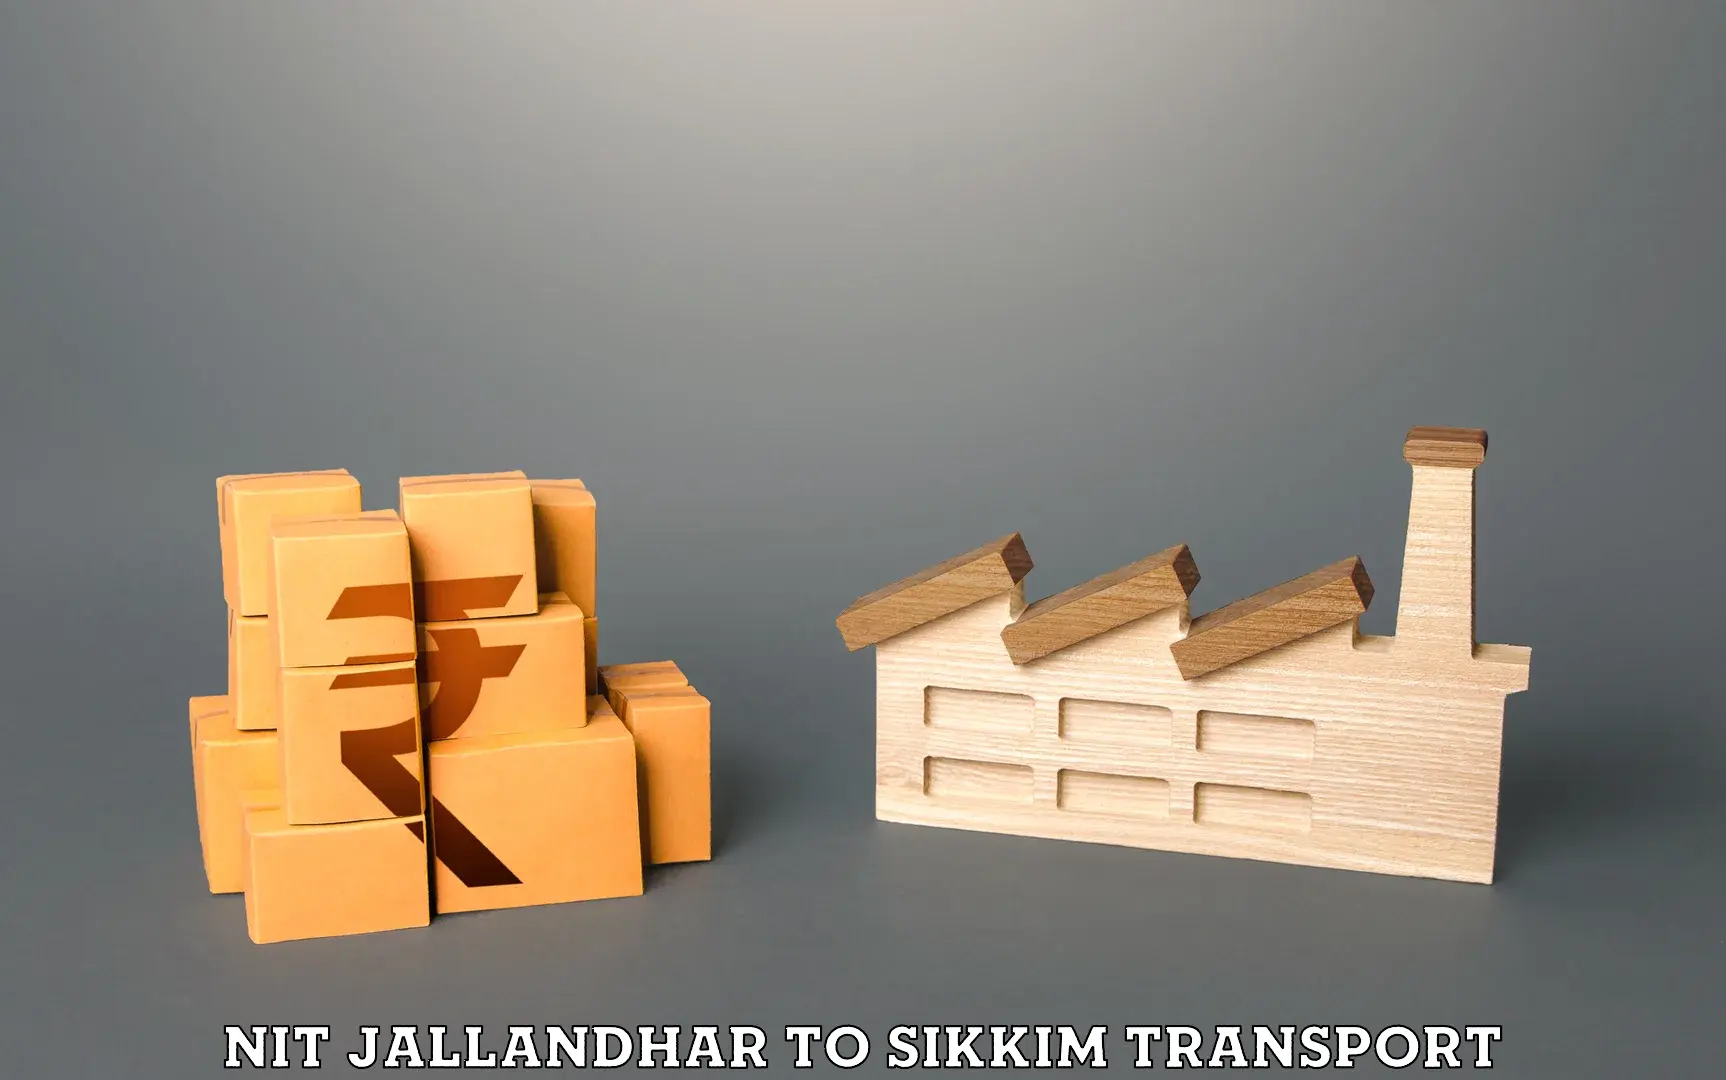 Furniture transport service NIT Jallandhar to Ranipool